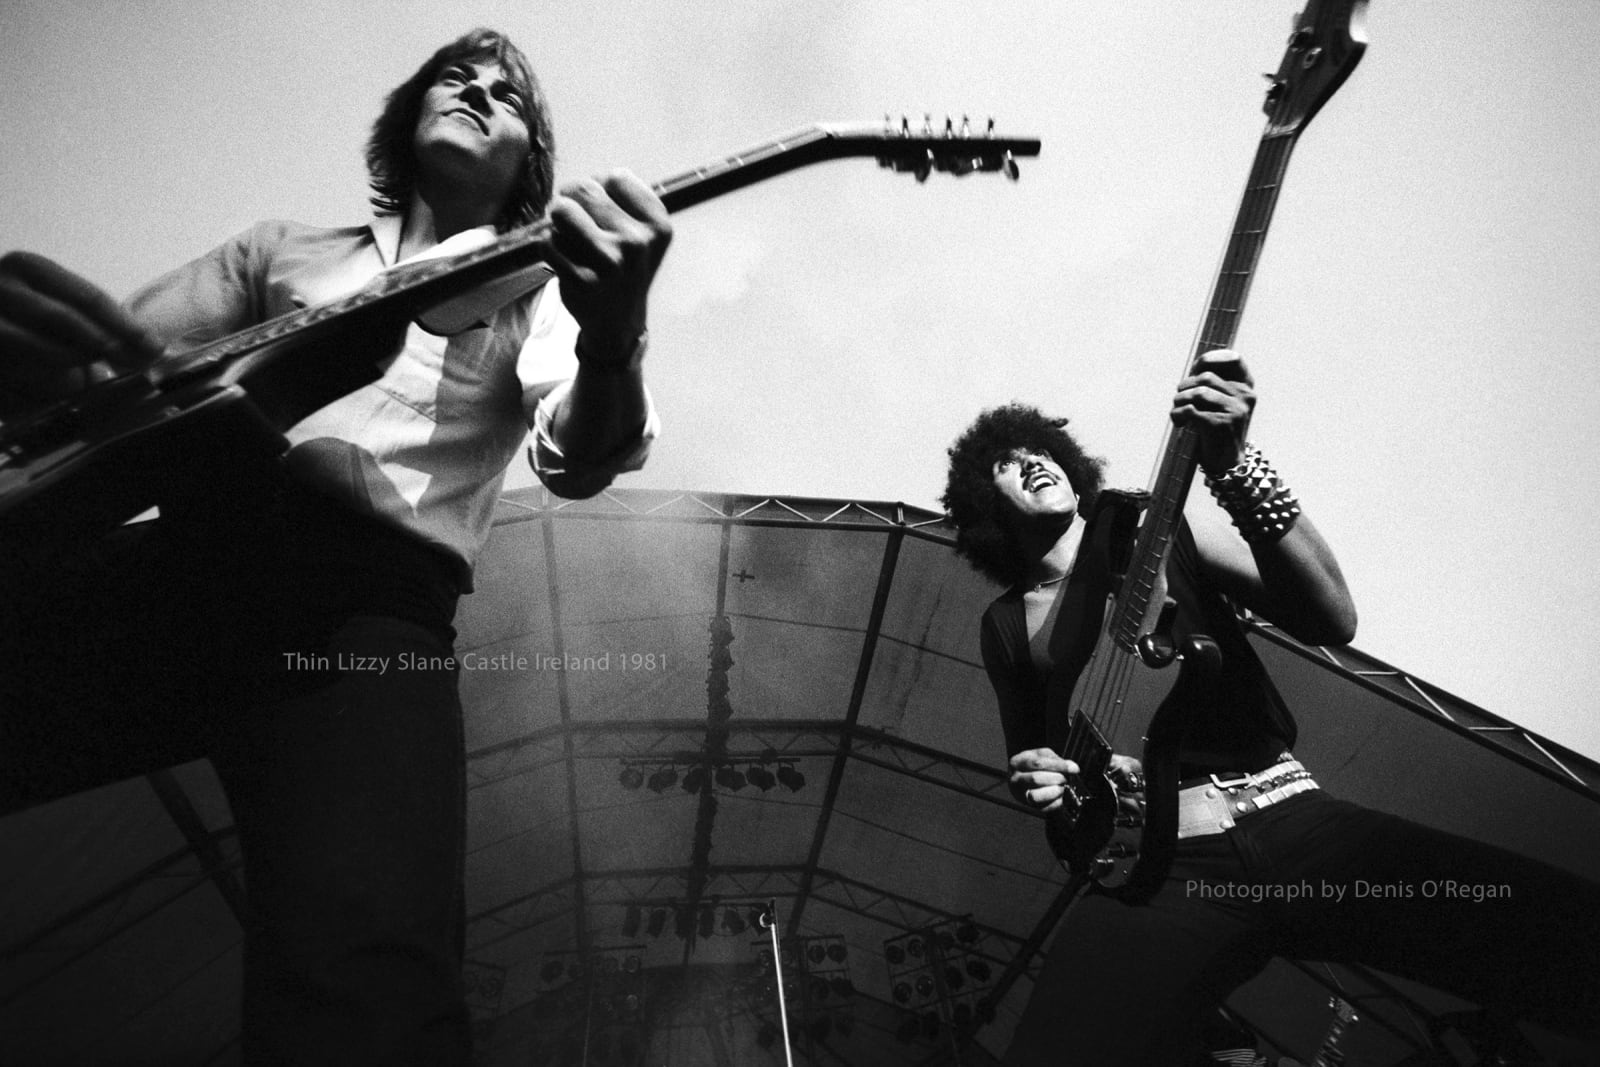 THIN LIZZY, Thin Lizzy Slane Castle, 1981